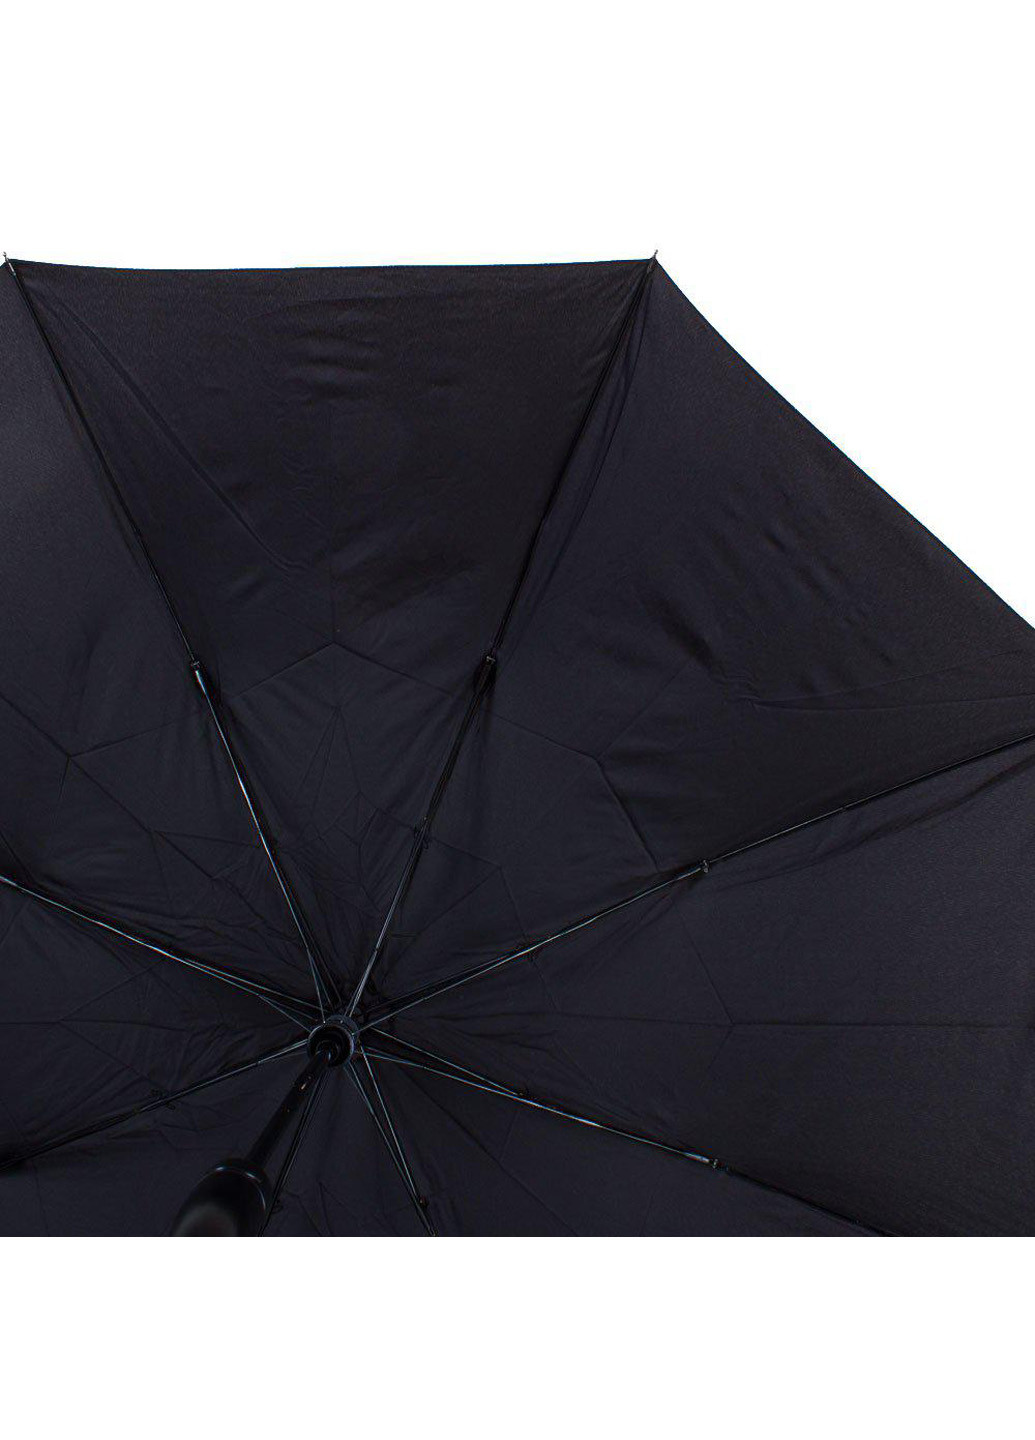 Мужской складной зонт полуавтомат 106 см Zest (194317707)